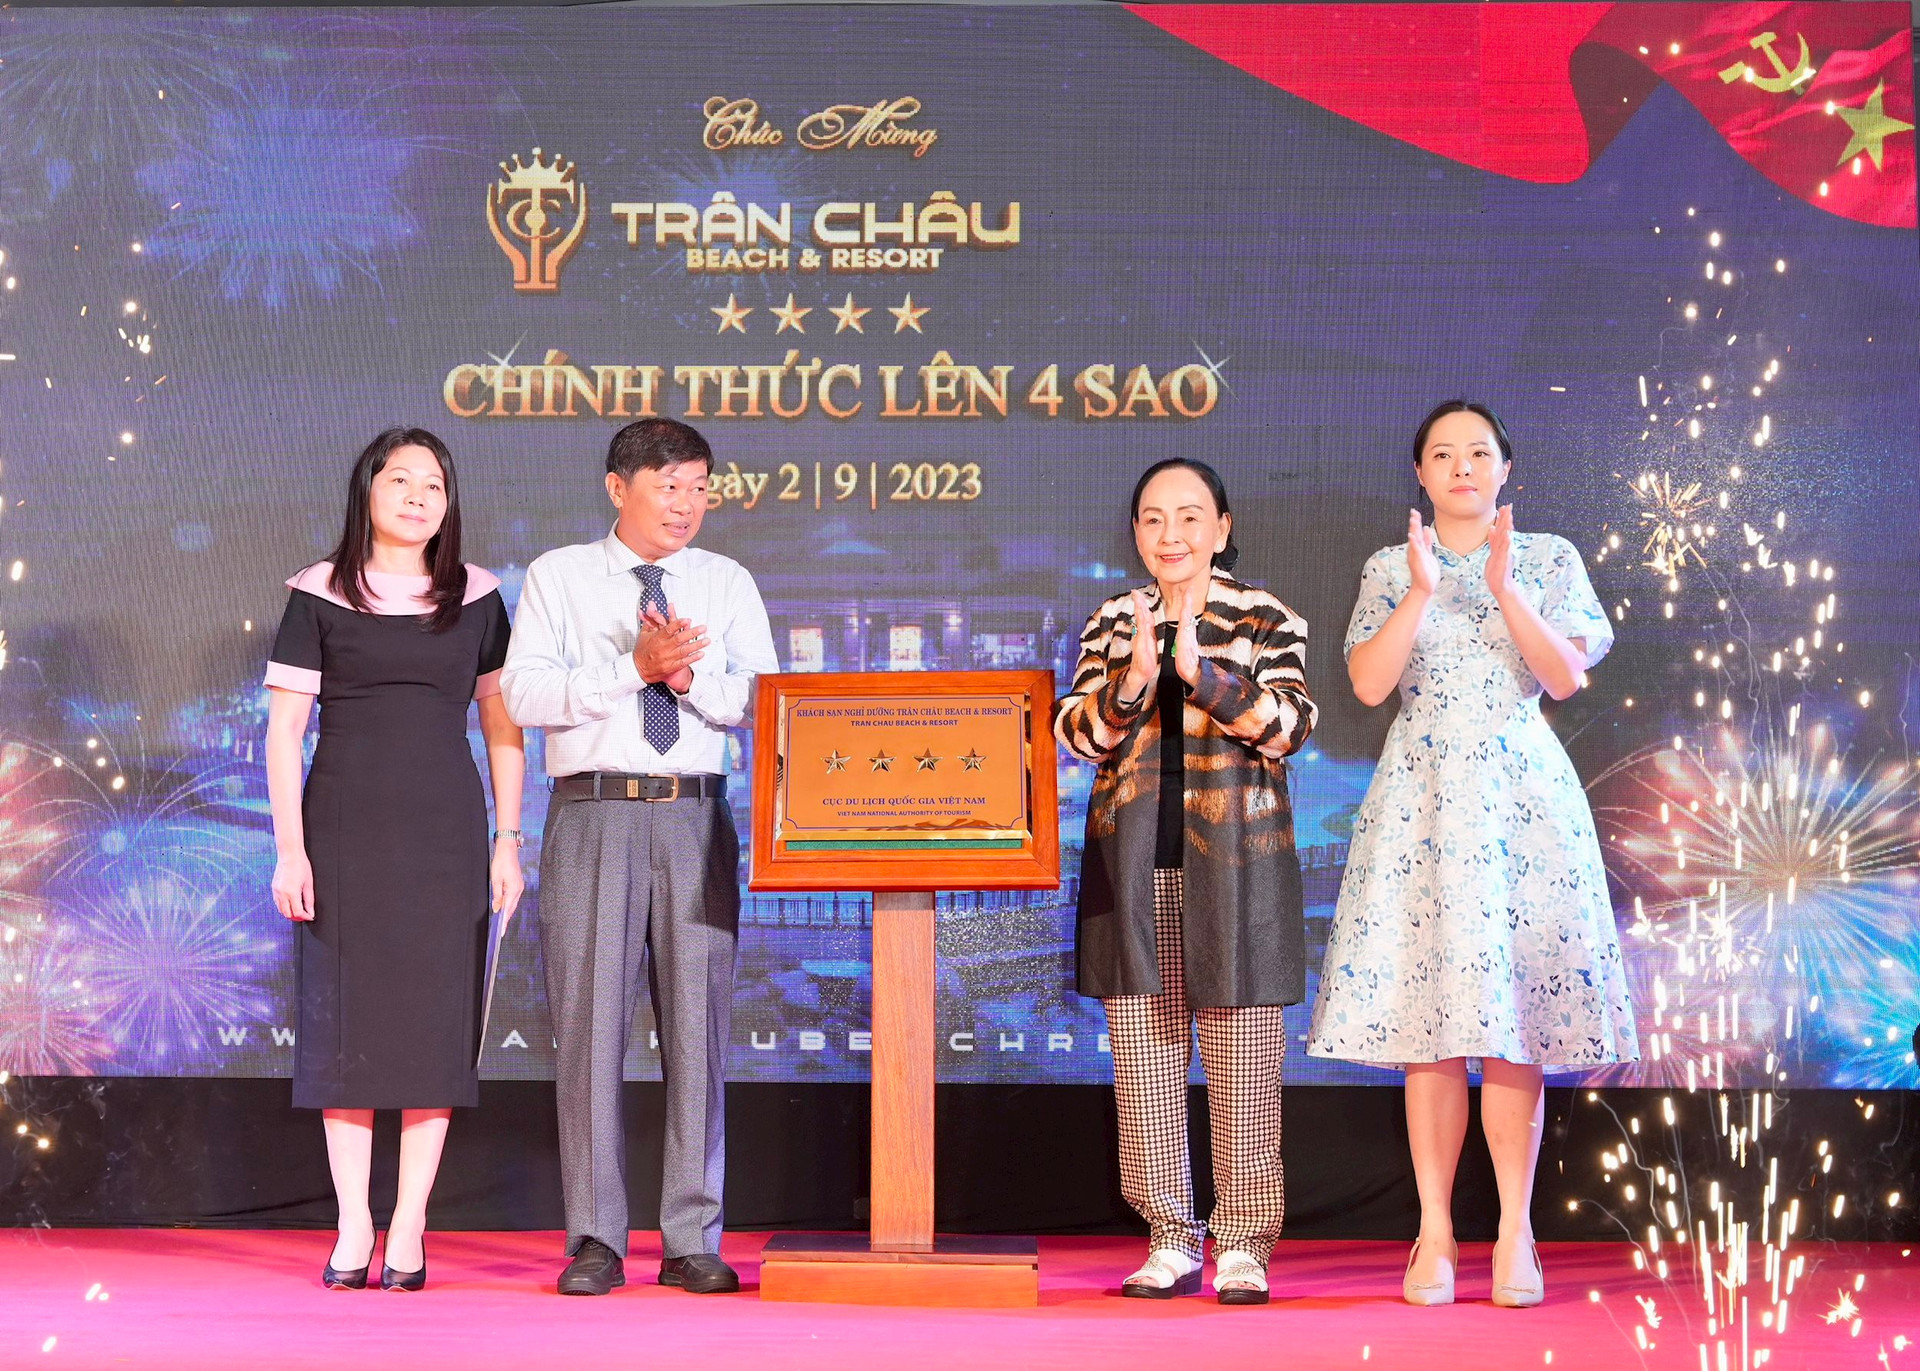 Trân Châu Resort - Thiên đường nghỉ dưỡng đa sắc màu ở Phước Hải đạt chuẩn 4 sao